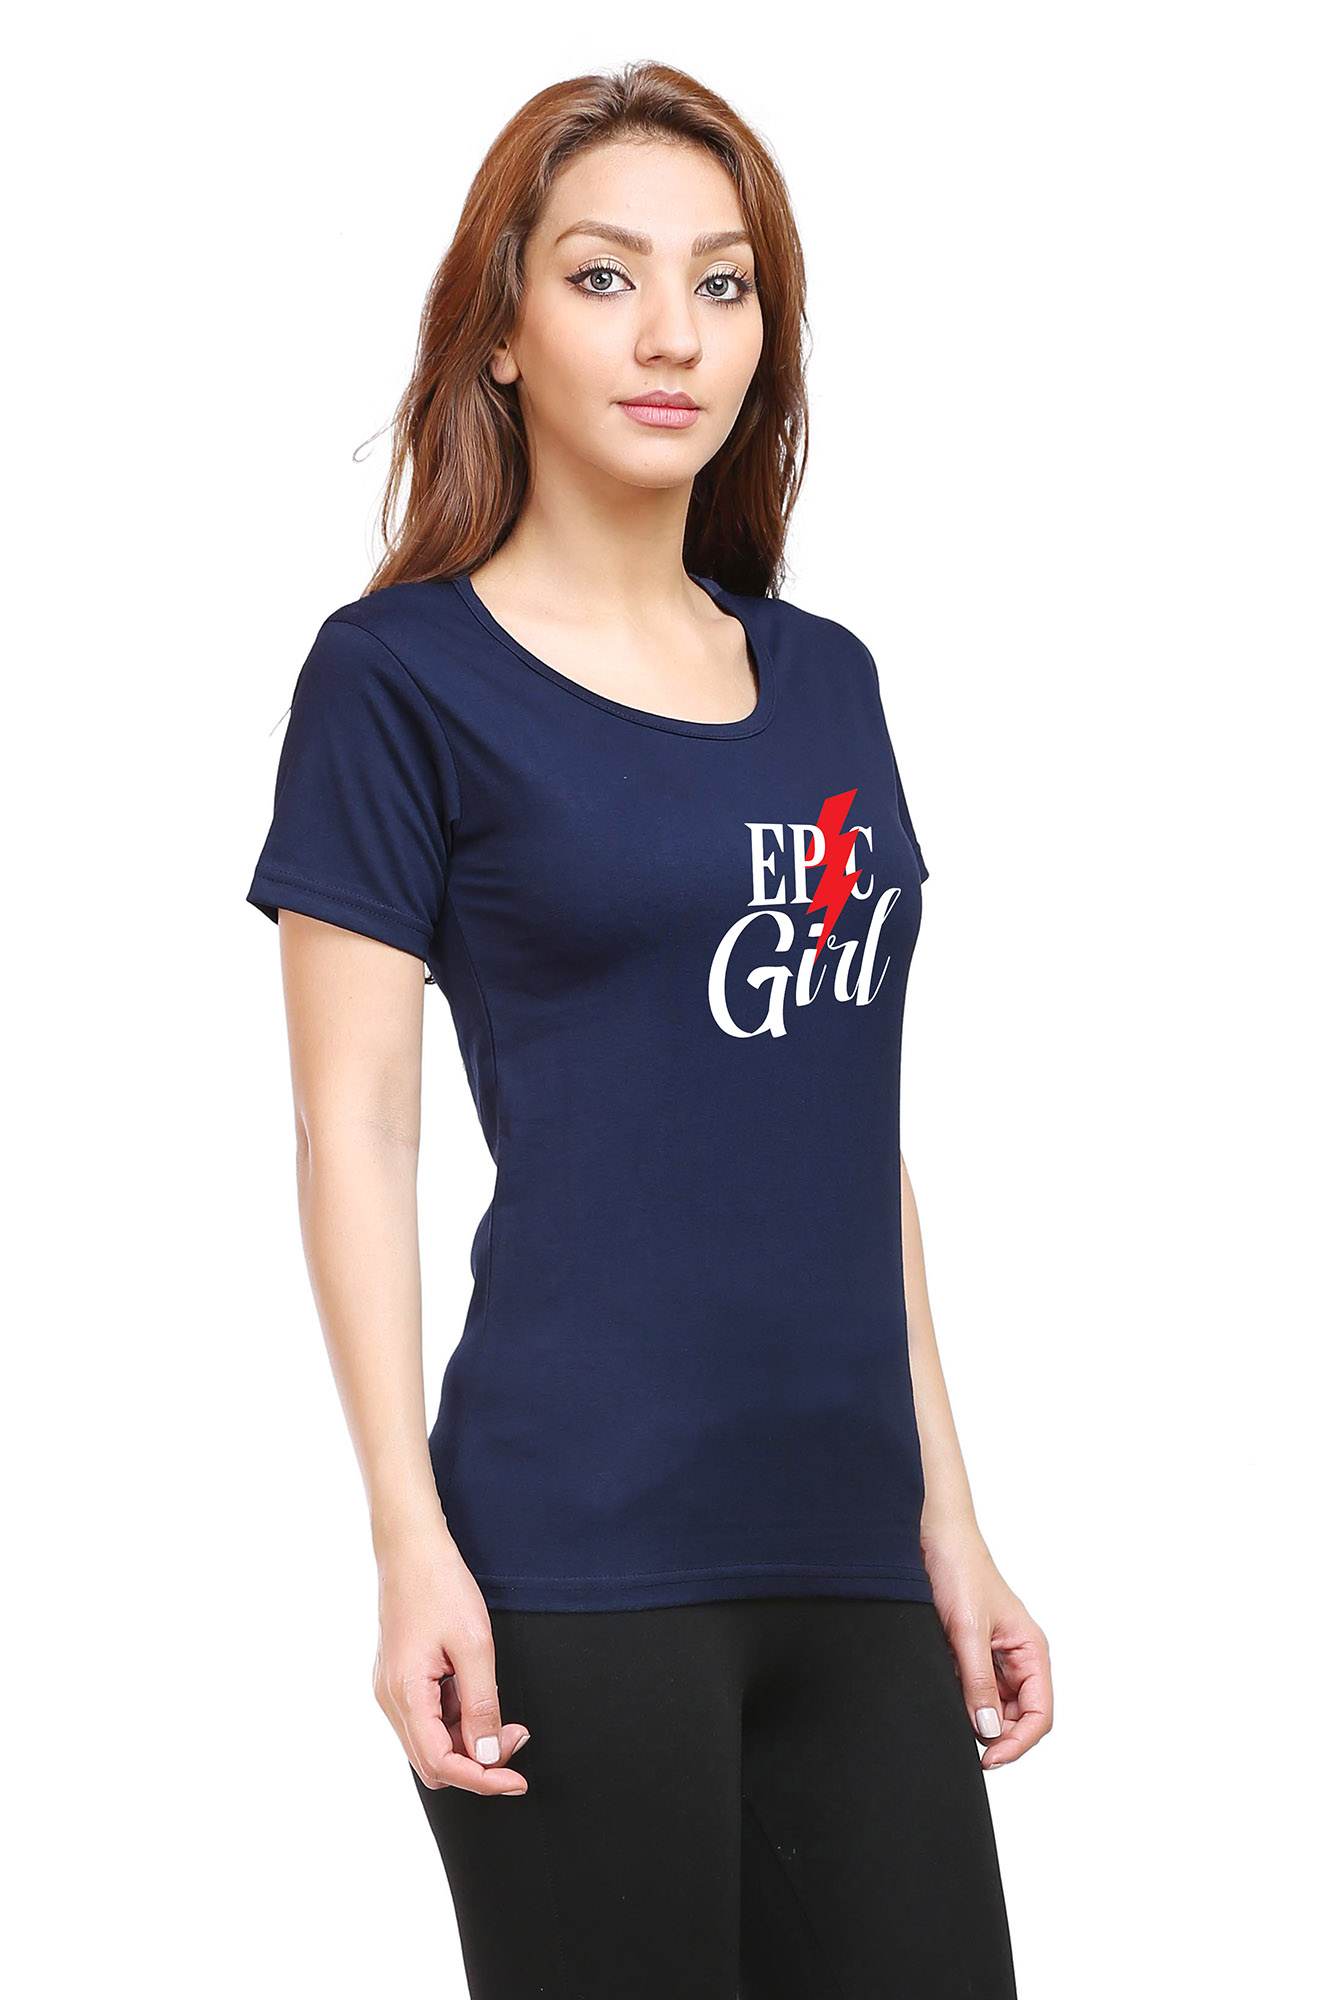 Epic Girl Women's Half Sleeve Tshirt